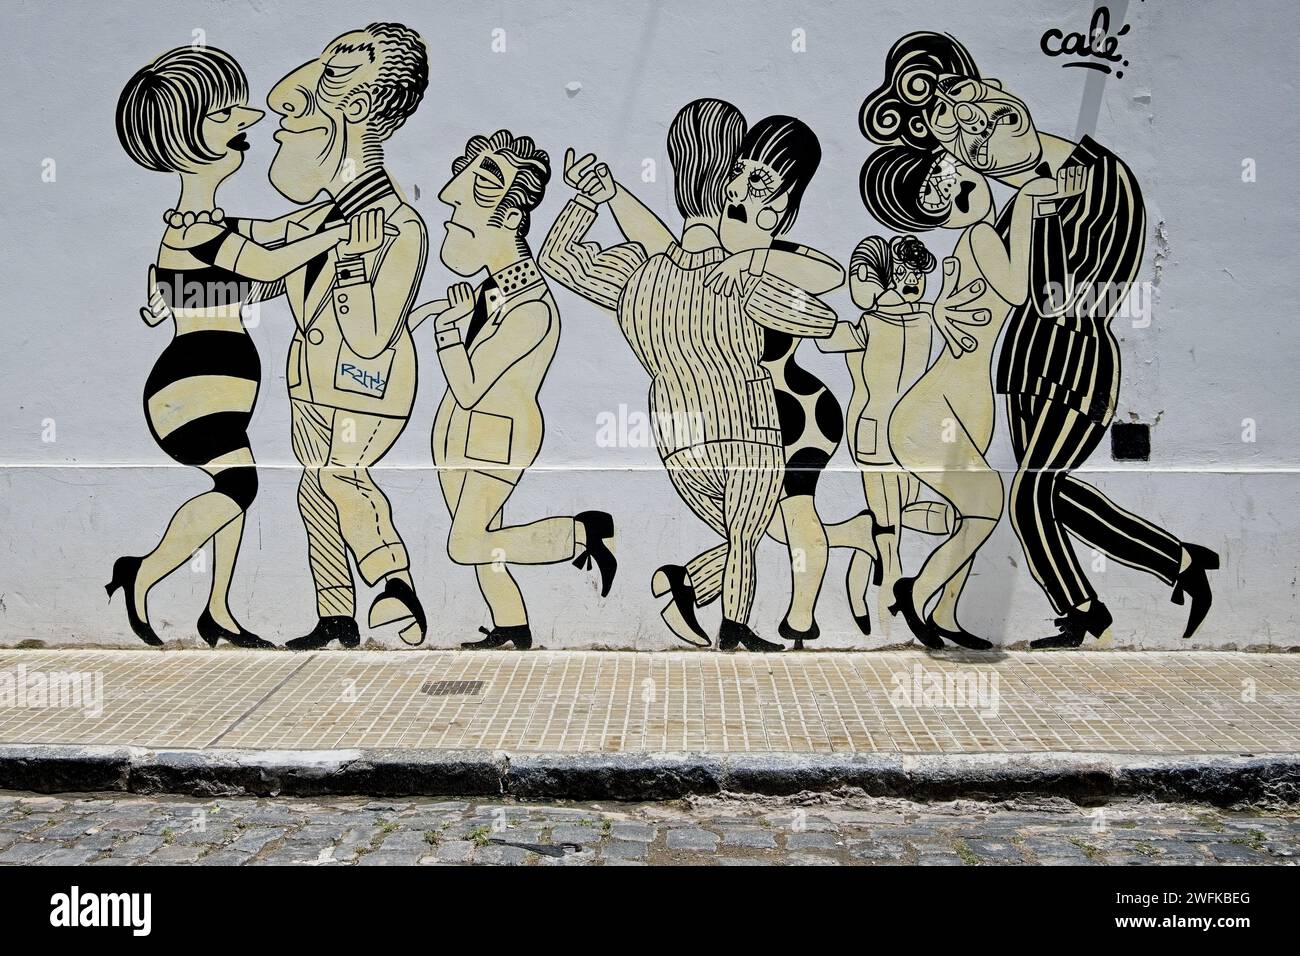 Ein Beispiel für Buenos Aires Street Art, die Zeichentrickfiguren zeigt, die den Tango tanzen. Buenos Aires ist bekannt für seine lebendige Straßenkunst-Kultur. Stockfoto